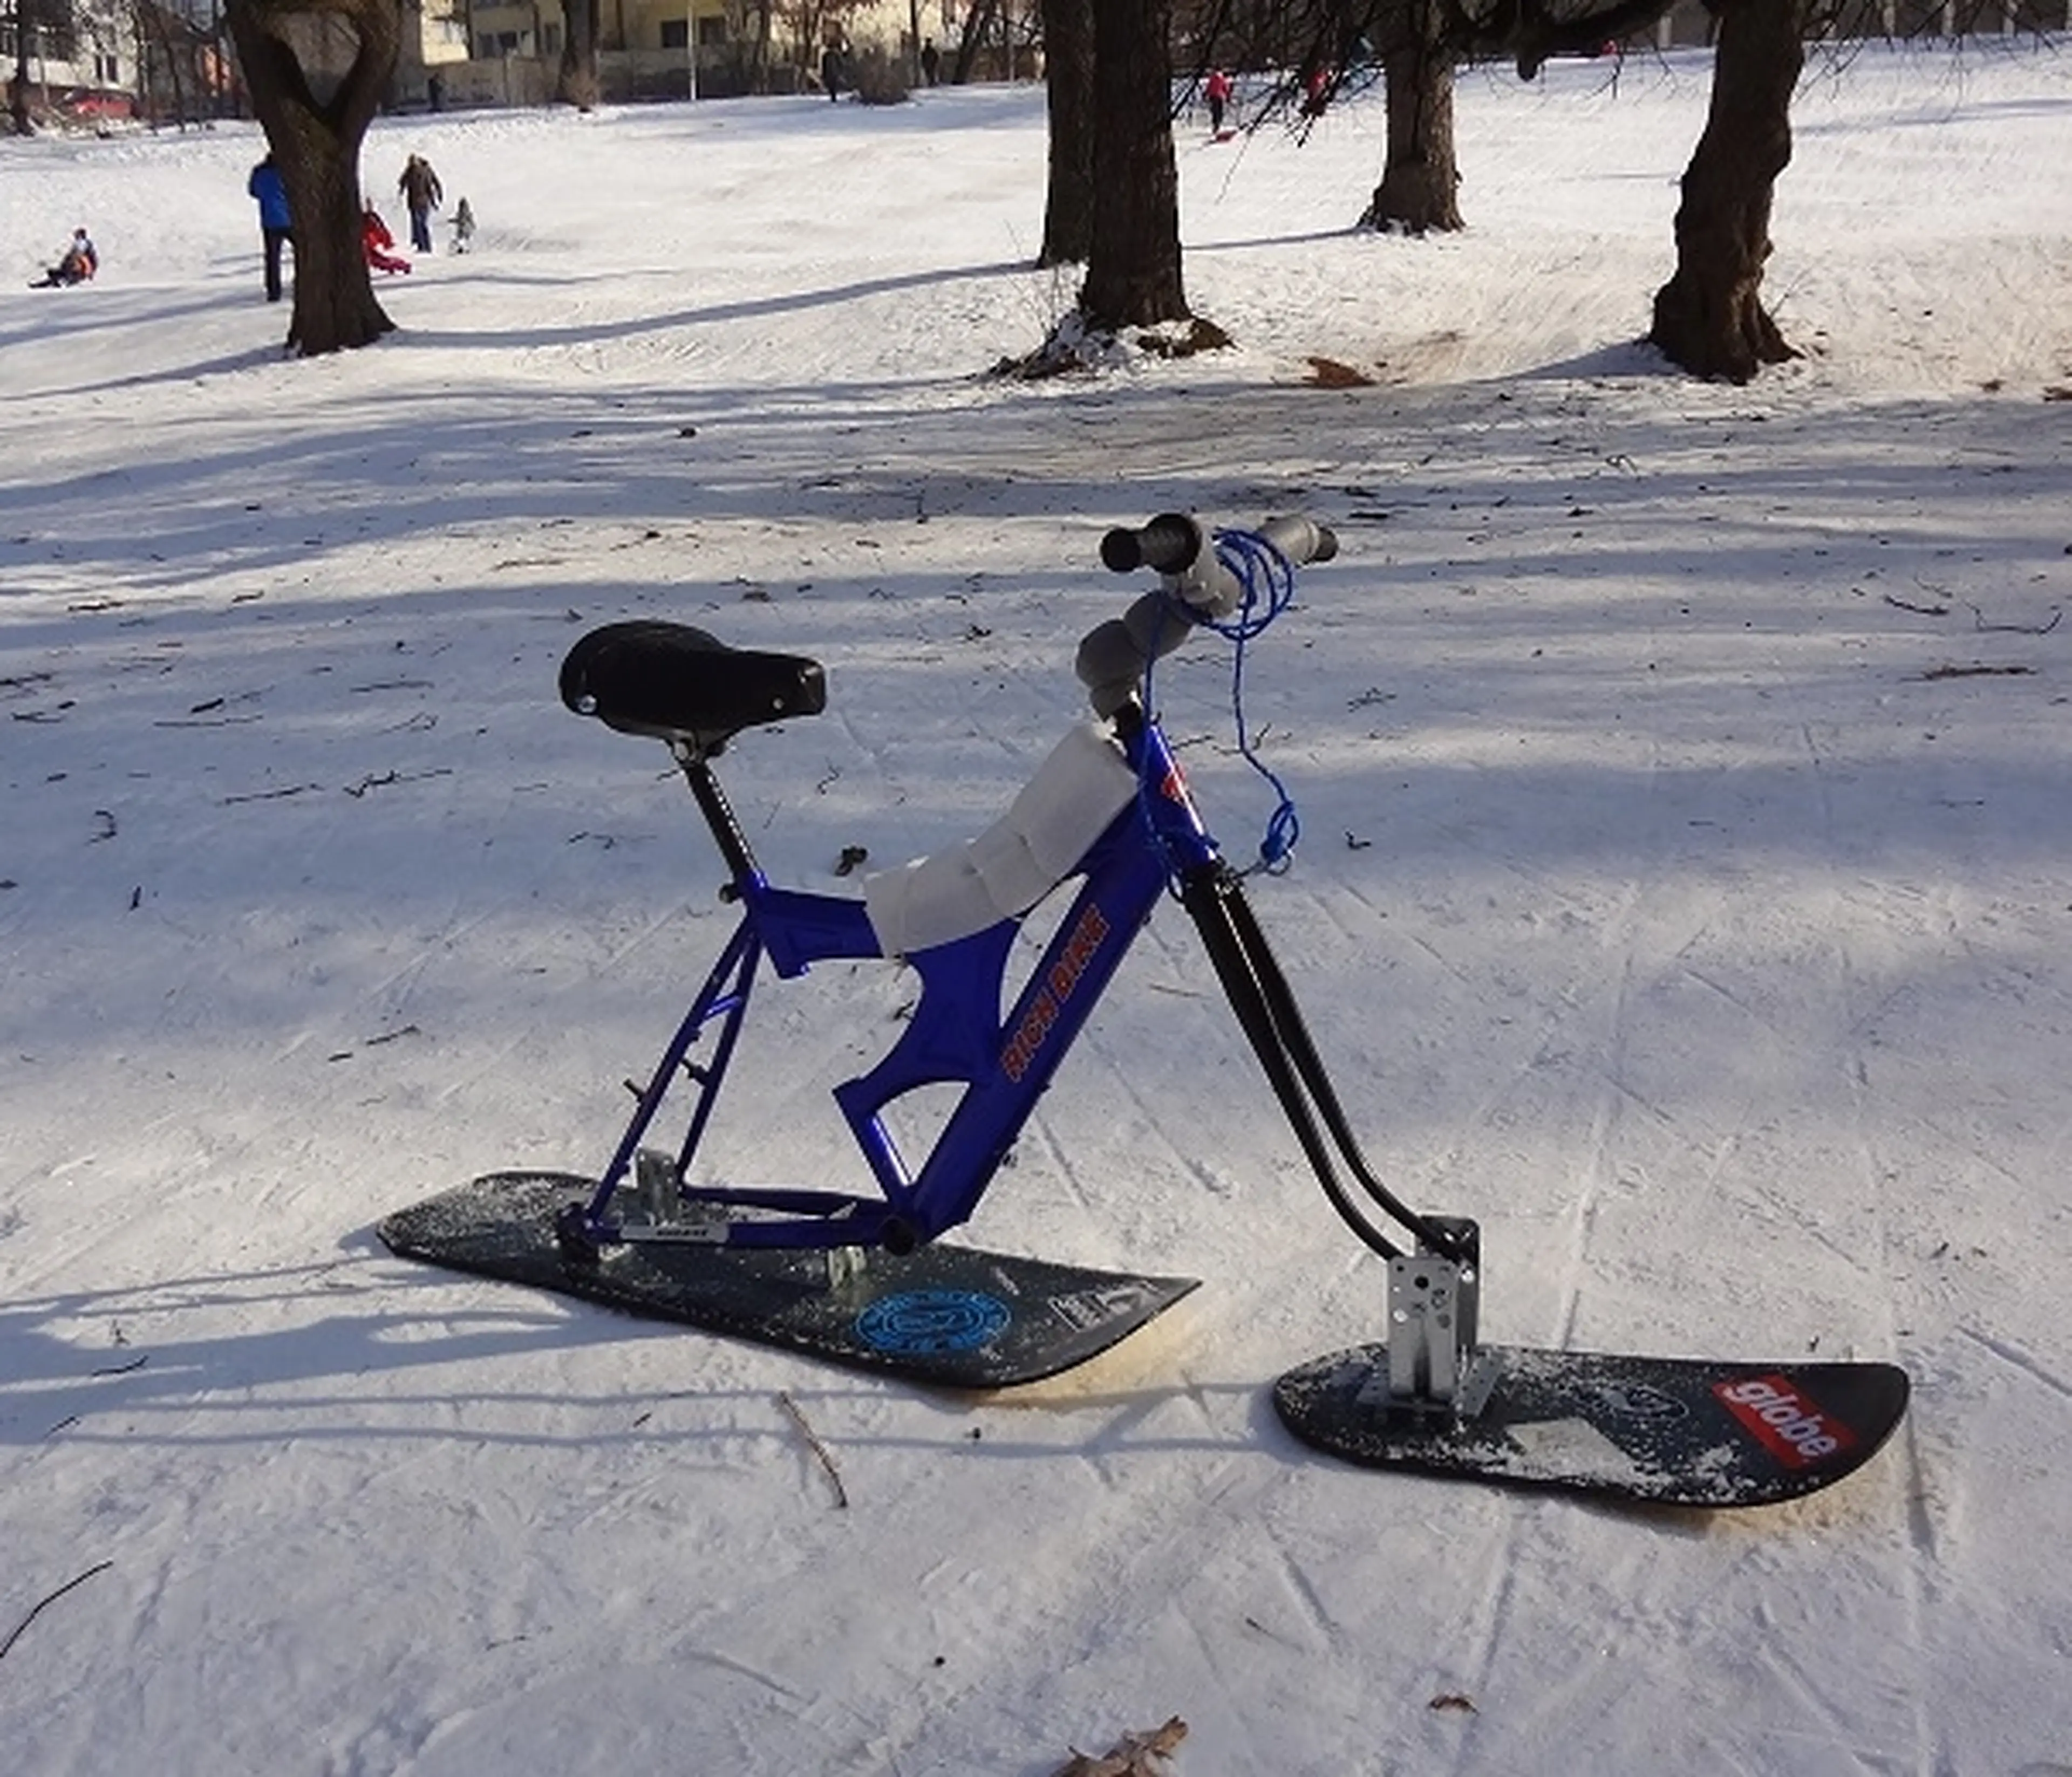 1. Snow bike